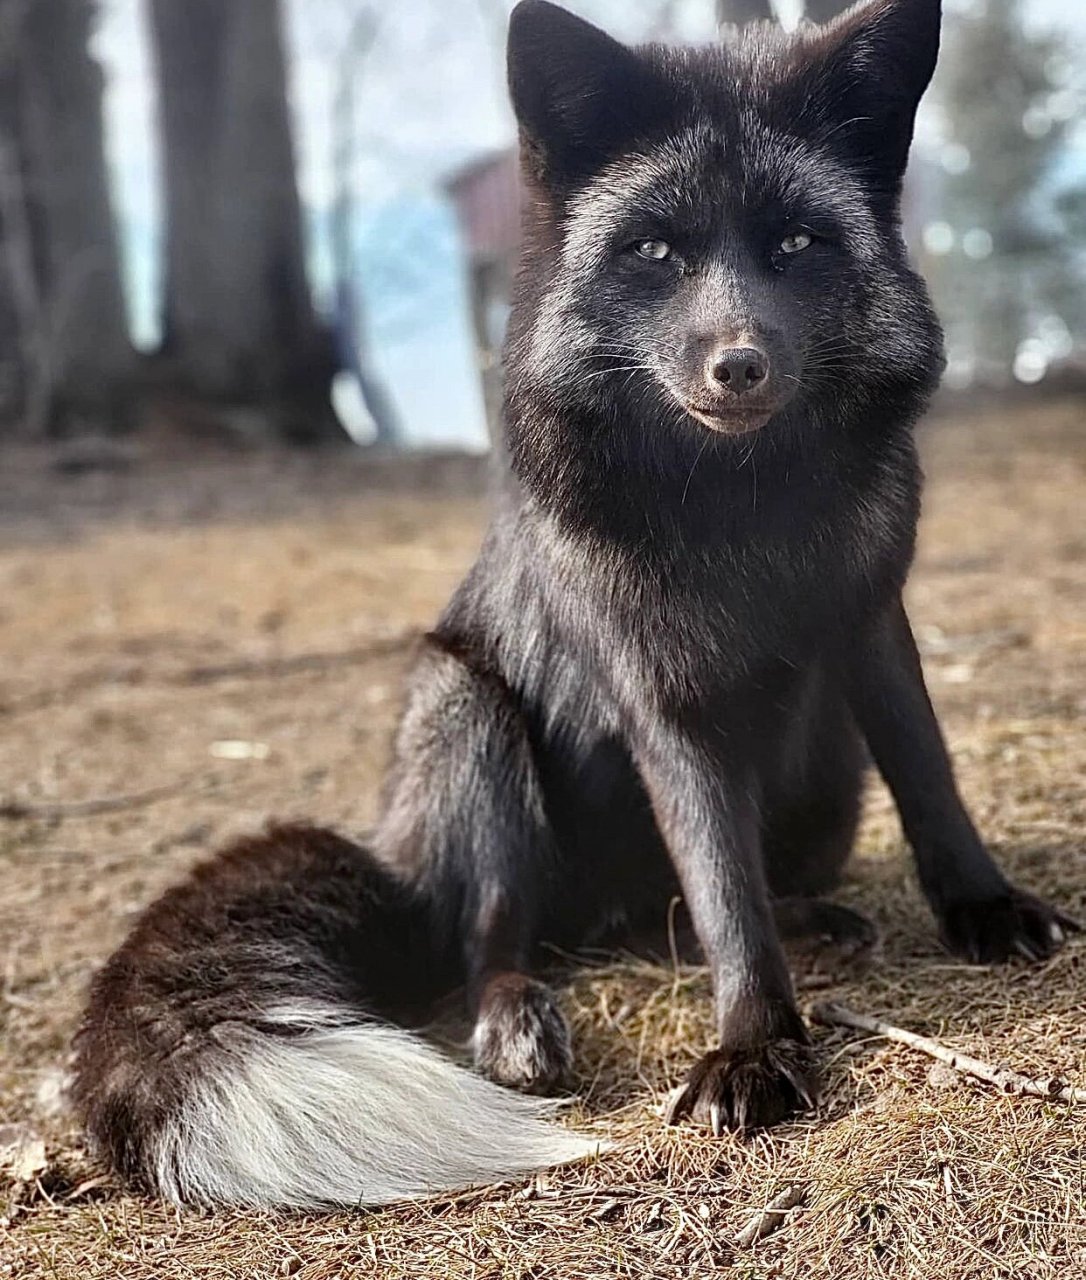 【银狐】【纯黑狐】 银狐,又叫银黑狐/玄狐/青狐 silver fox 是赤狐的